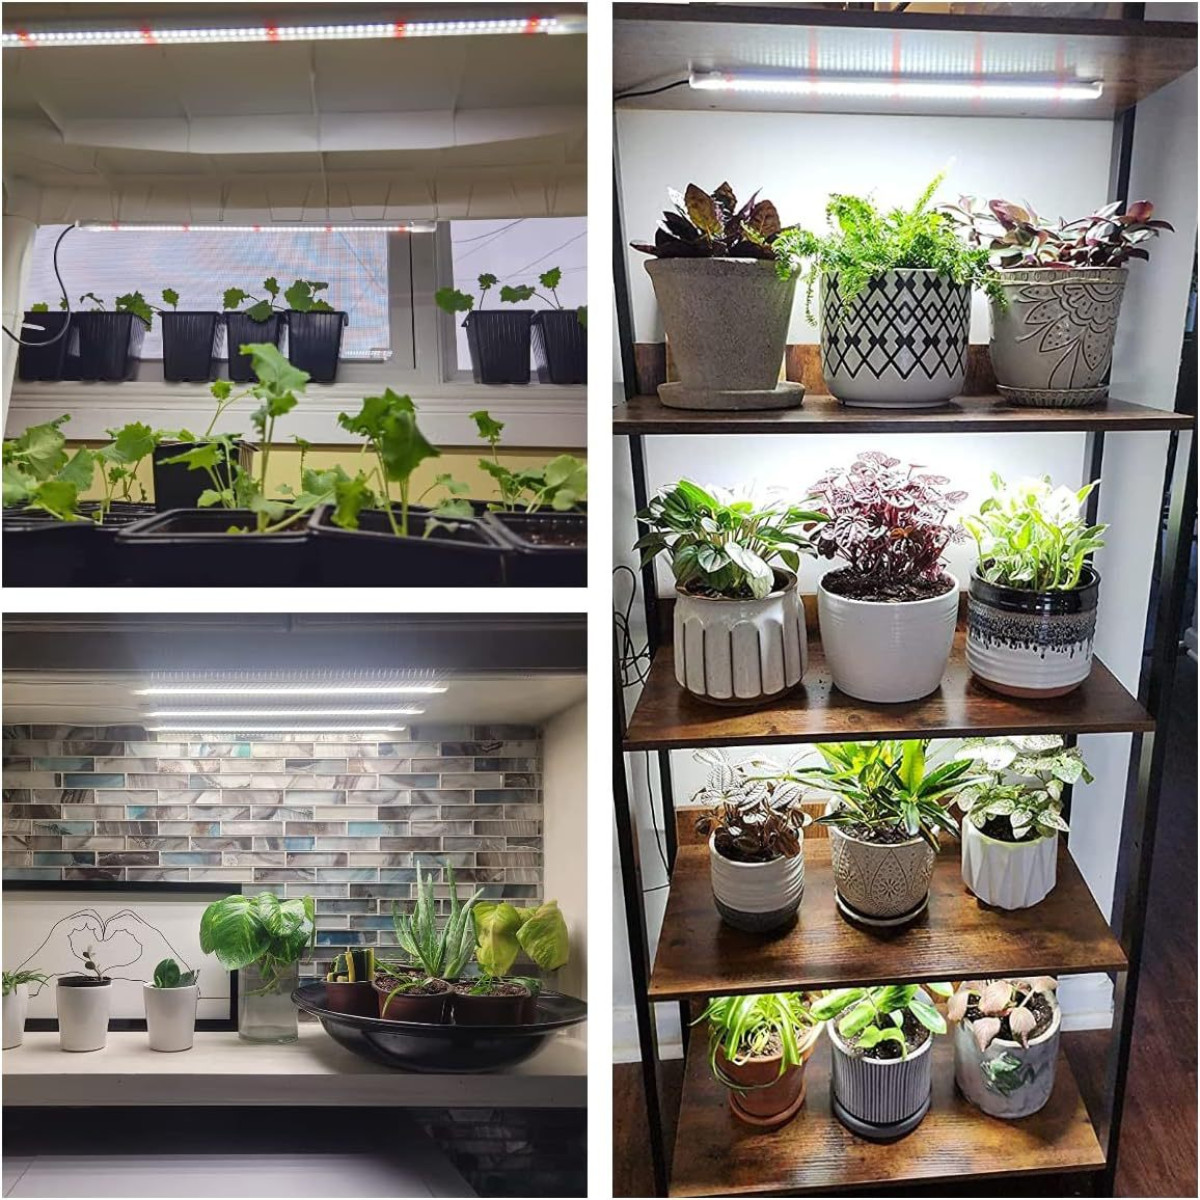 INF Pflanzenbeleuchtung, Wachstumslicht für Zimmerpflanzen, Pflanzenlicht Vollspektr mit